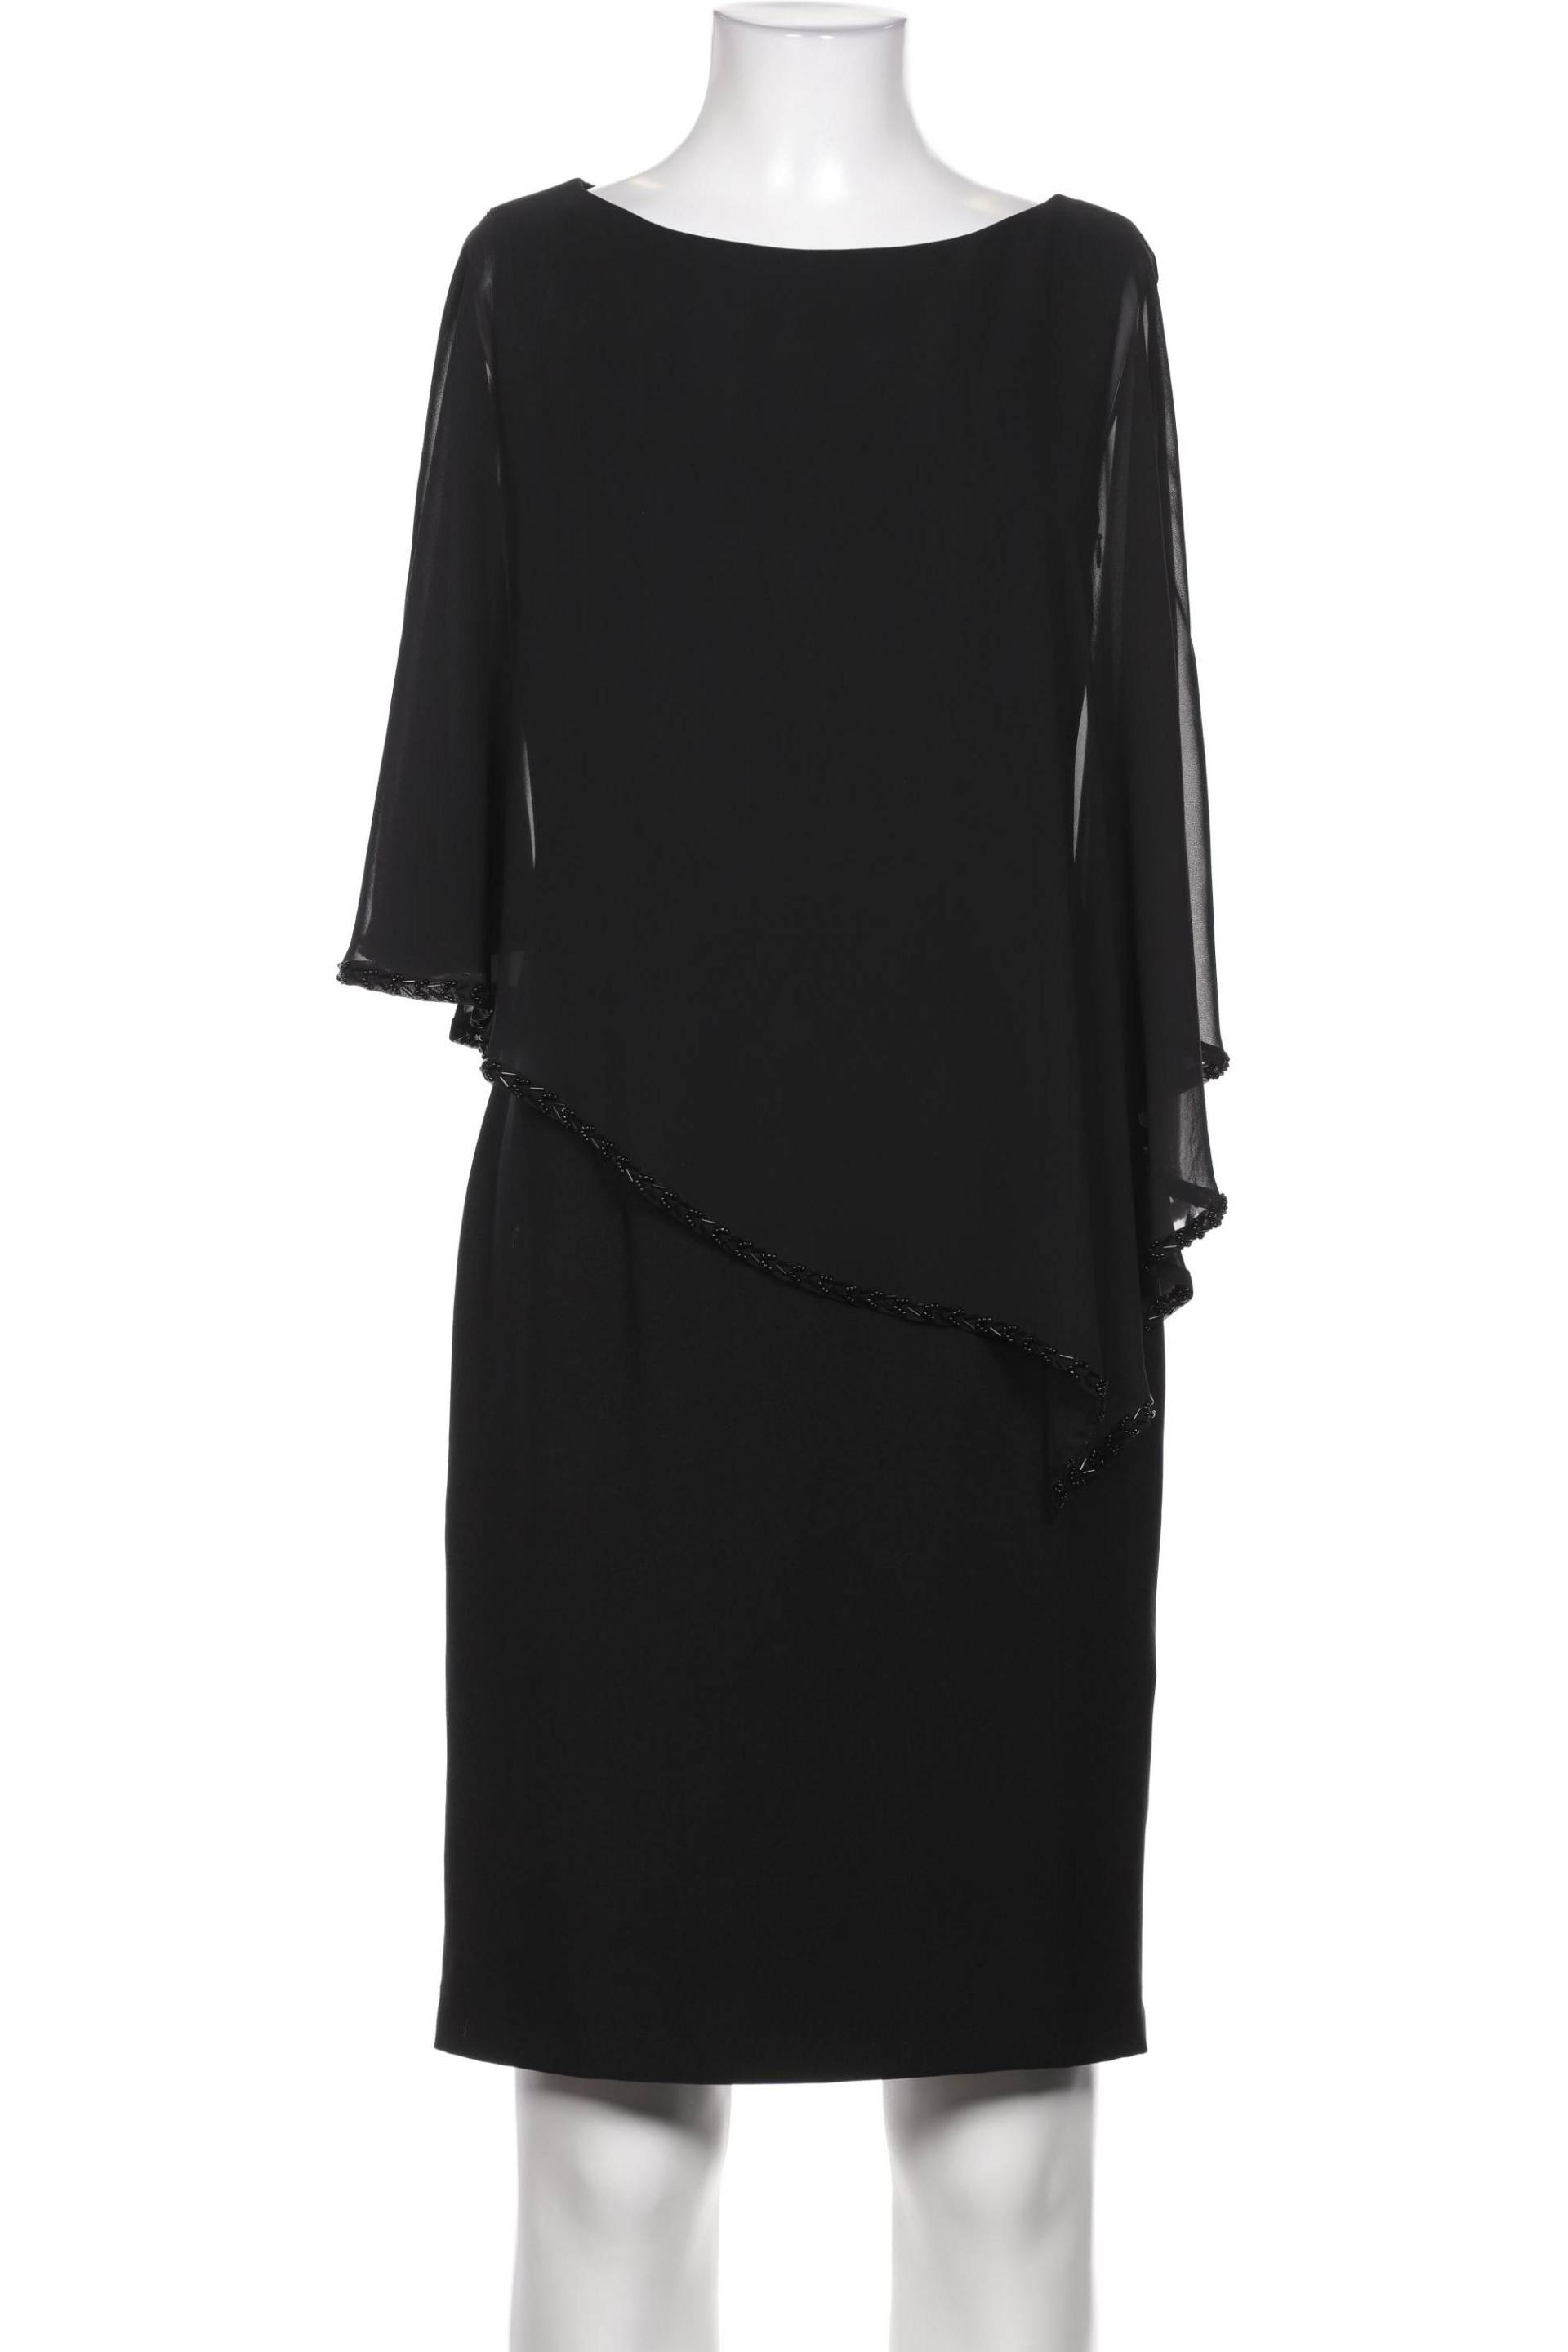 s.Oliver Selection Damen Kleid, schwarz, Gr. 34 von s.Oliver Selection